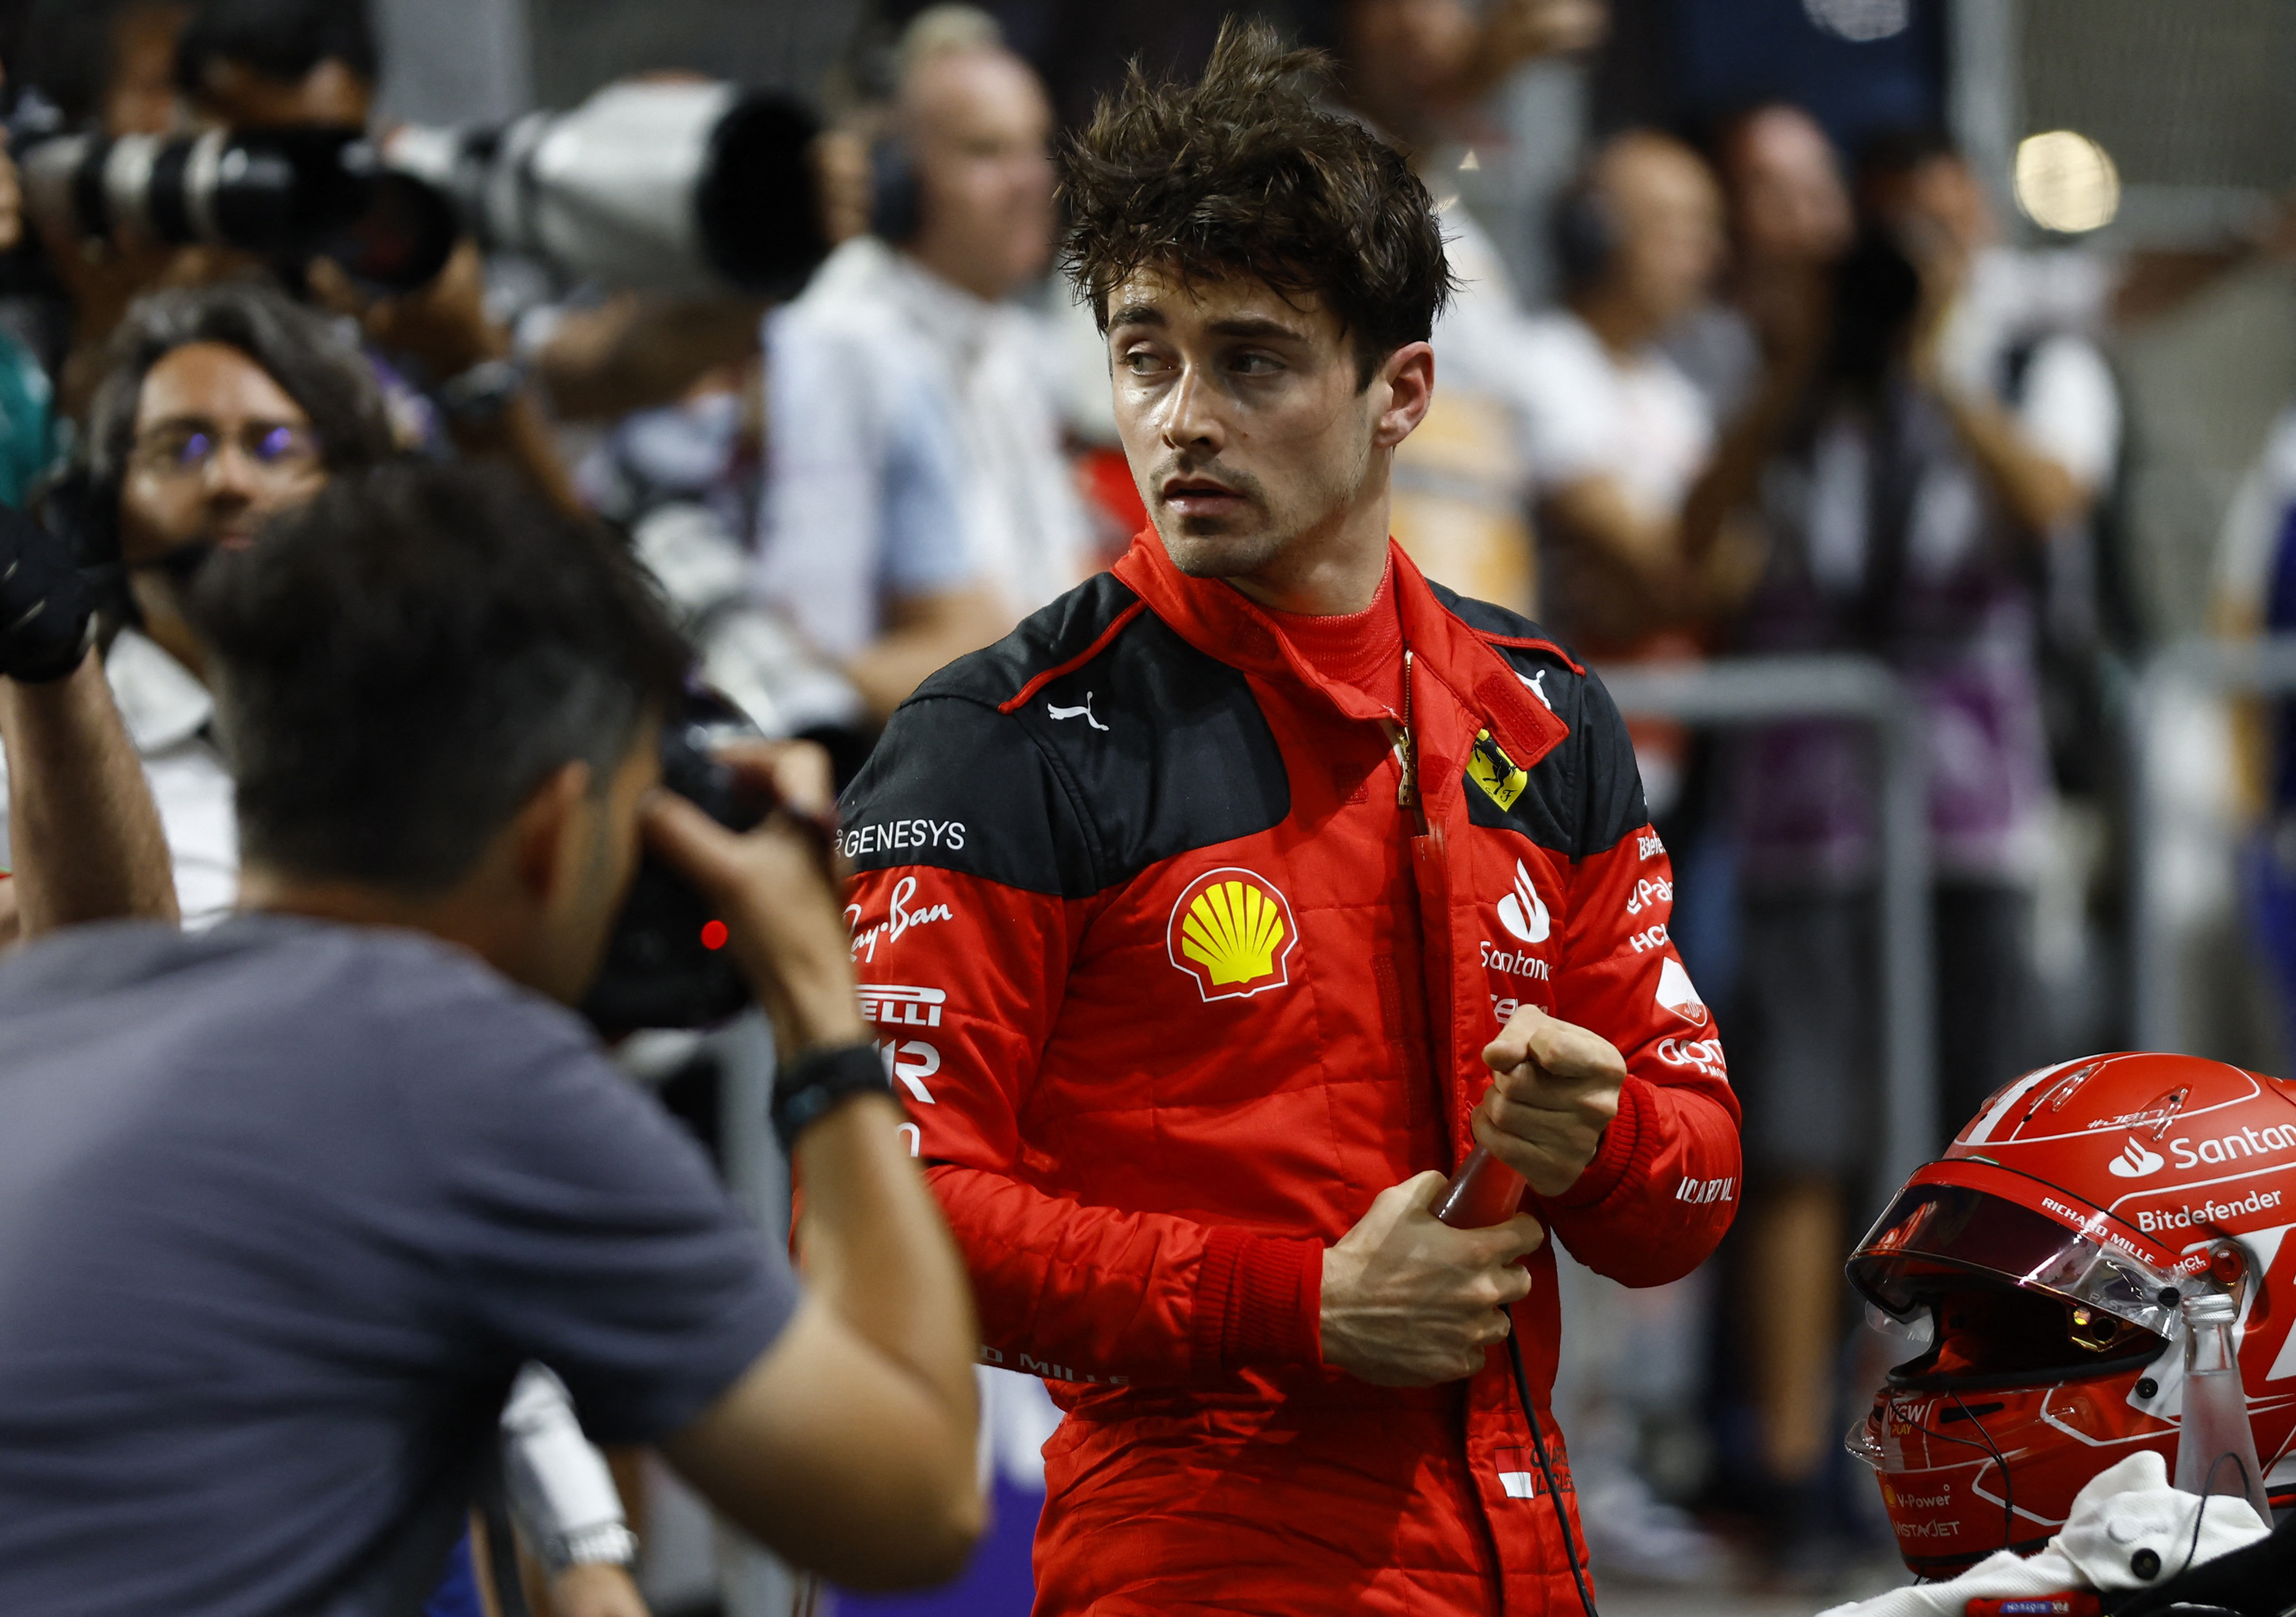 La paciencia se le agota a Charles Leclerc que tras su reunión con el presidente de Ferrari tiró otra bomba en la previa del Gran Premio de Australia (REUTERS/Rula Rouhana)